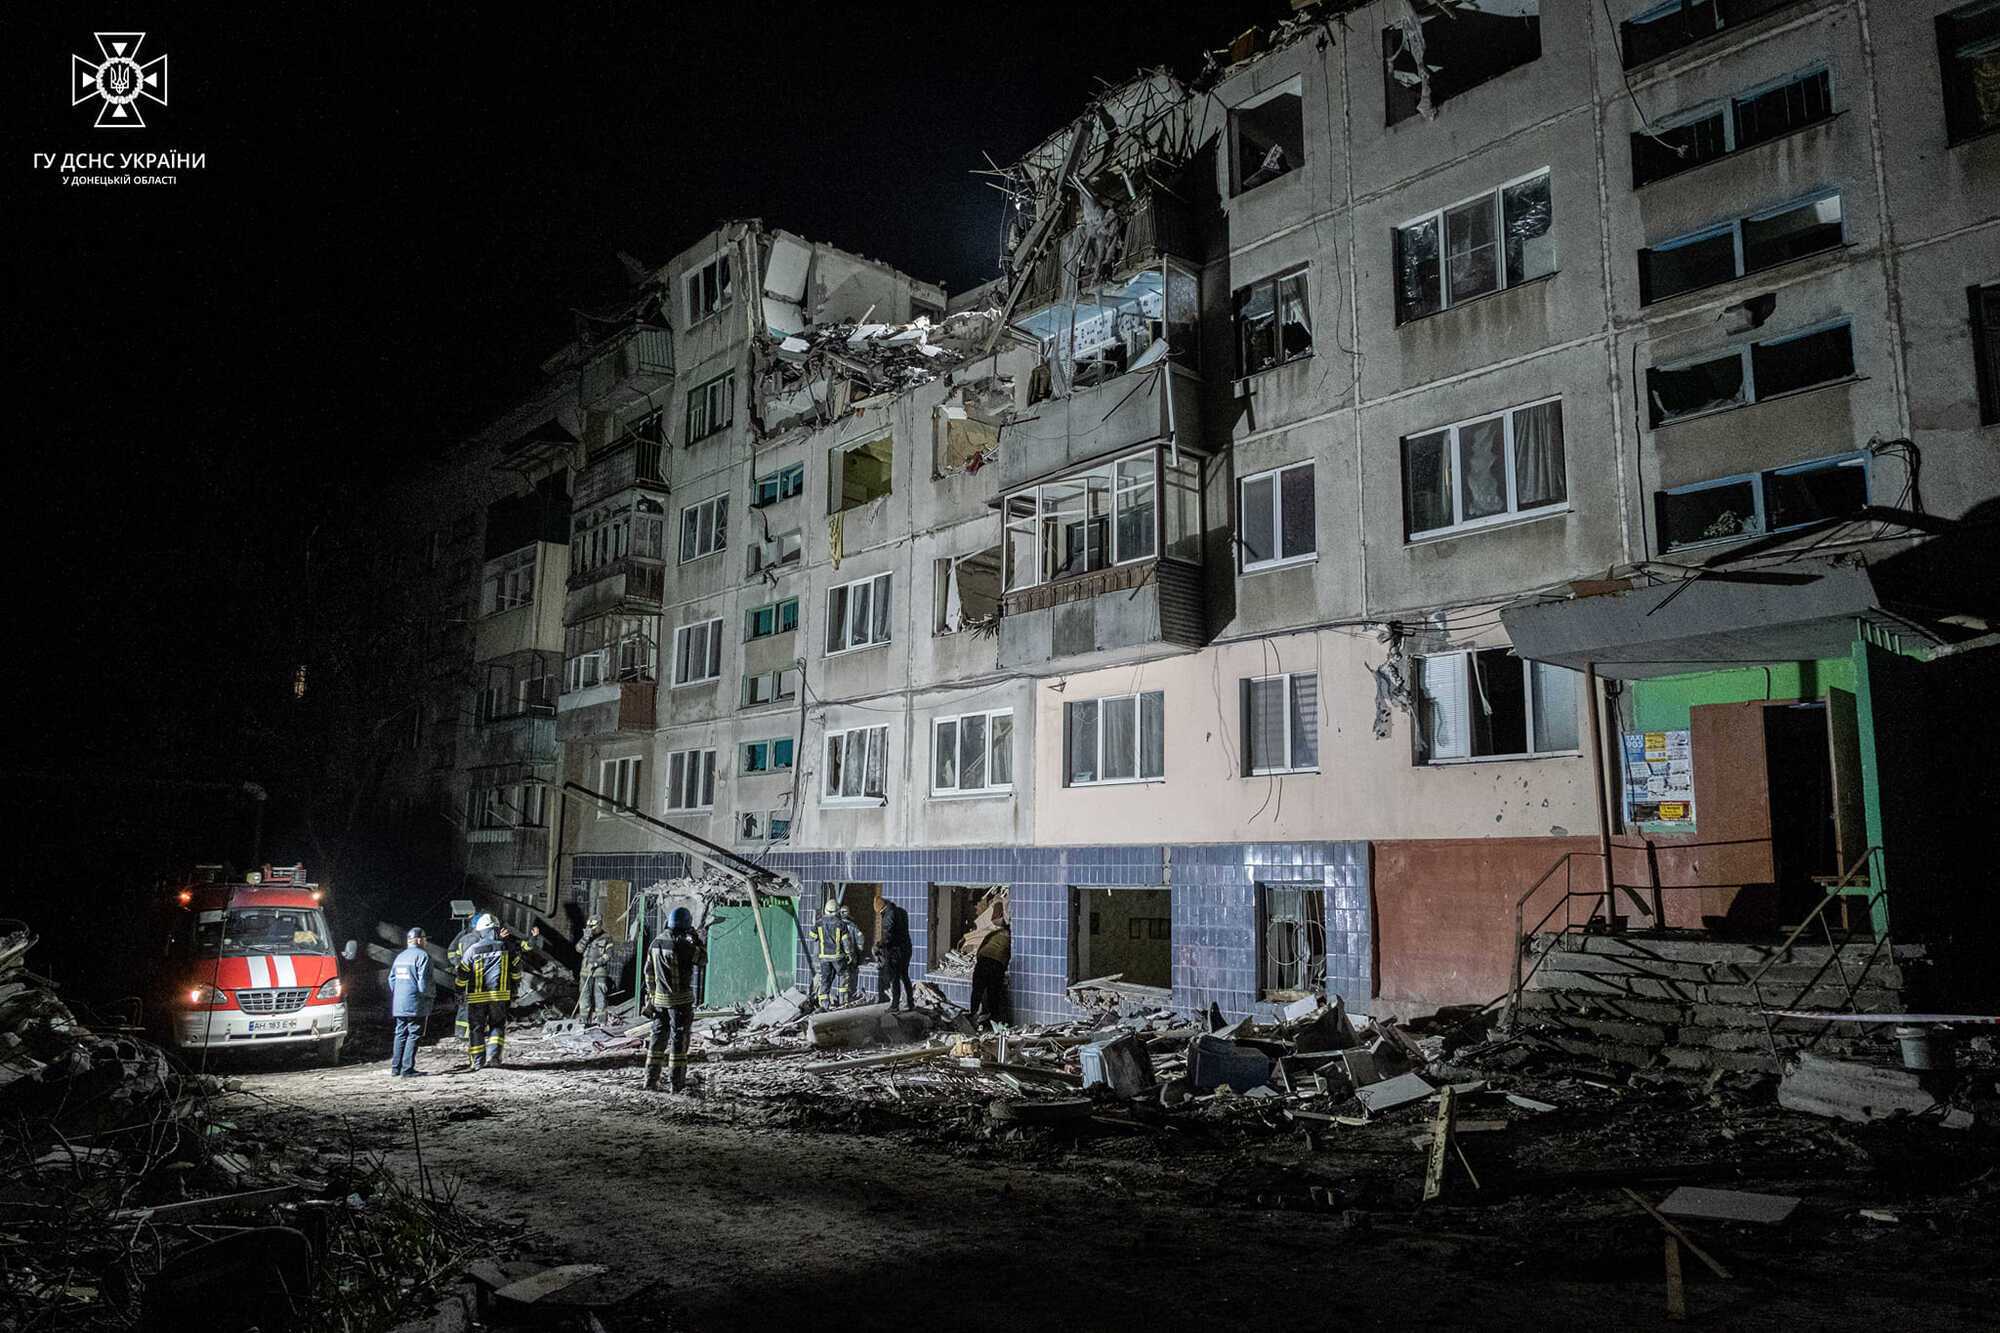 Два человека спасены: что происходит на месте удара российских ракет в Славянске. Фото и видео